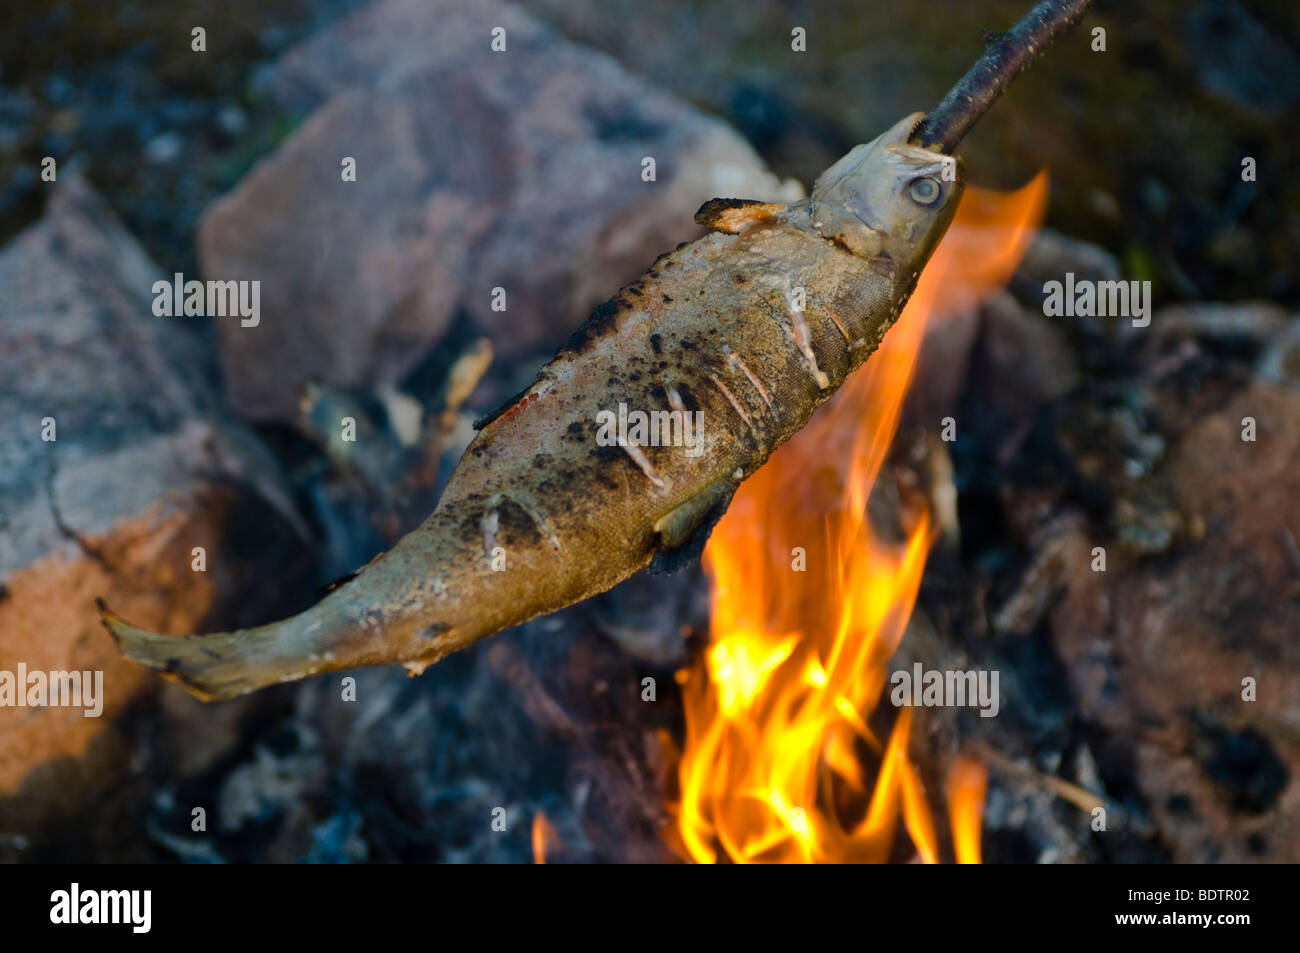 Grillen mit dem ueber à carnassiers Lagerfeuer, Laponie, Schweden, le poisson est la torréfaction sur la broche sur un feu de camp, Laponie, Suède Banque D'Images